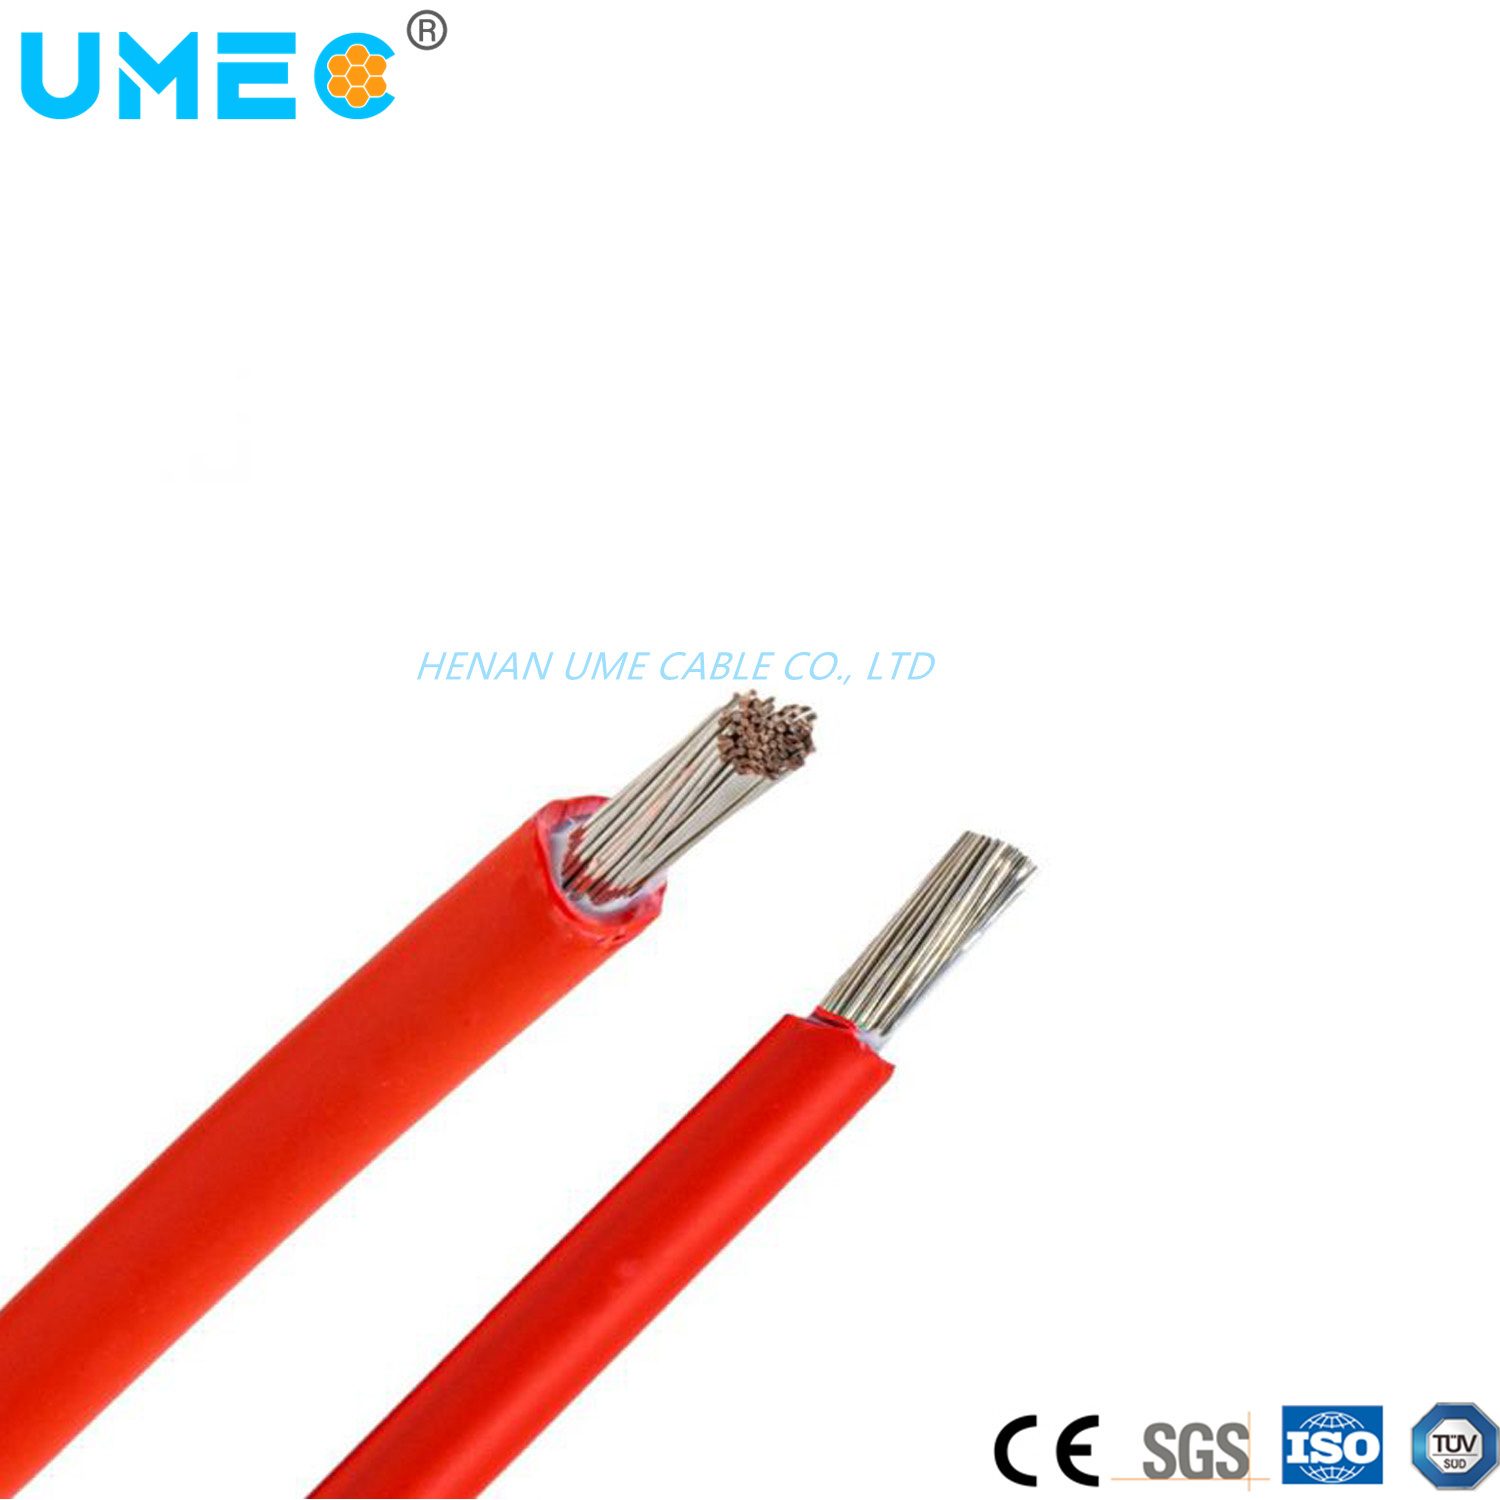 
                4mm 6mm Single Core DC Cable de energía solar fotovoltaica, energía fotovoltaica cable
            